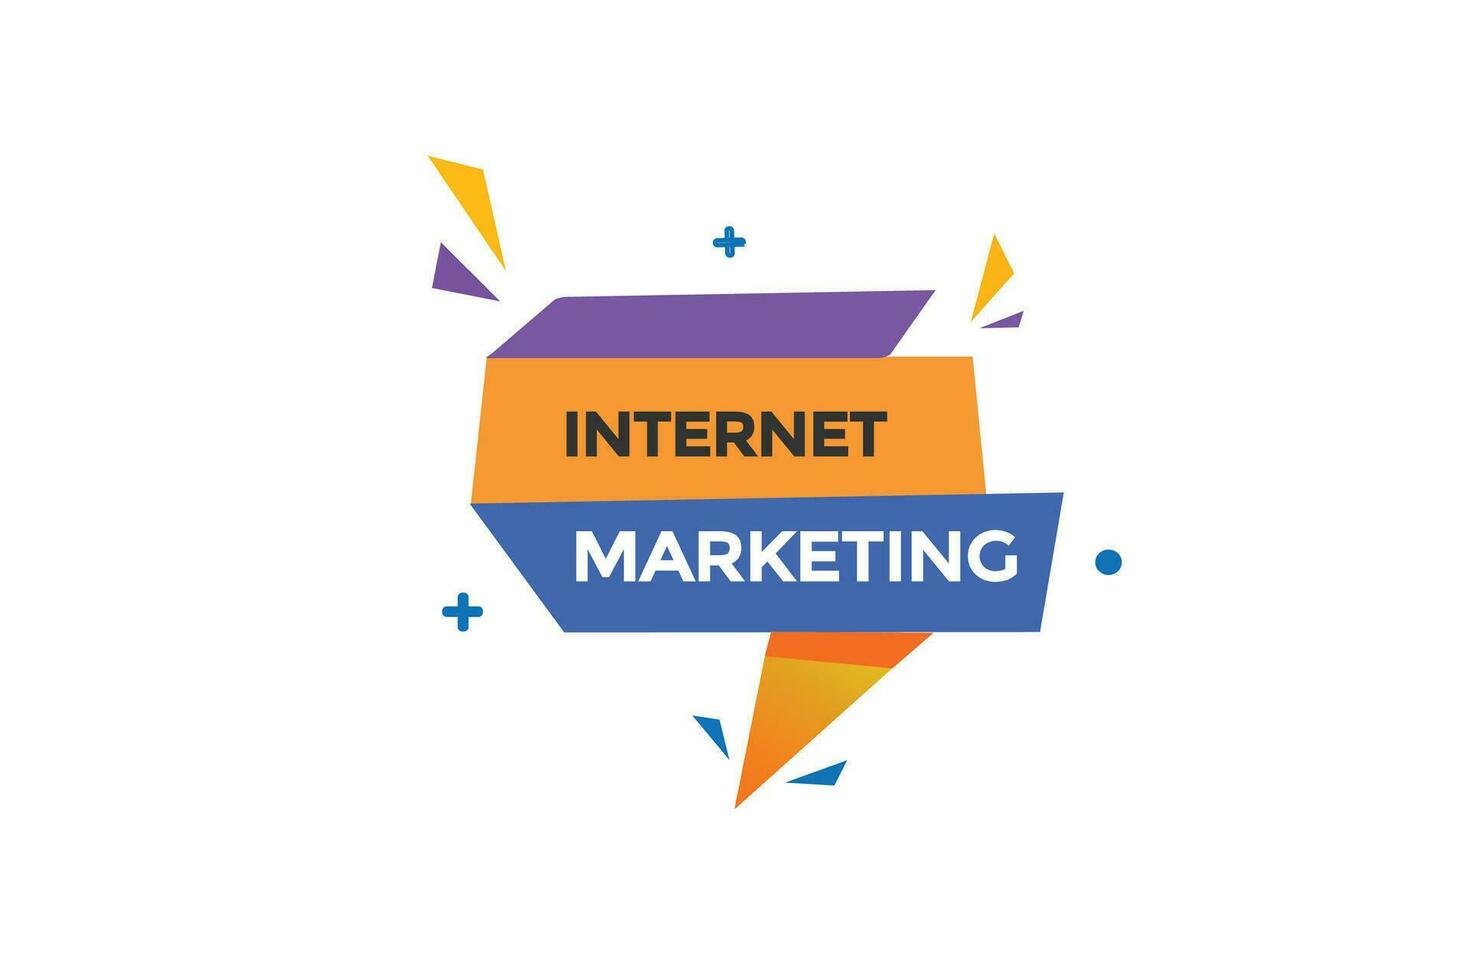 nuovo Internet marketing moderno, sito web, clic pulsante, livello, cartello, discorso, bolla striscione, vettore